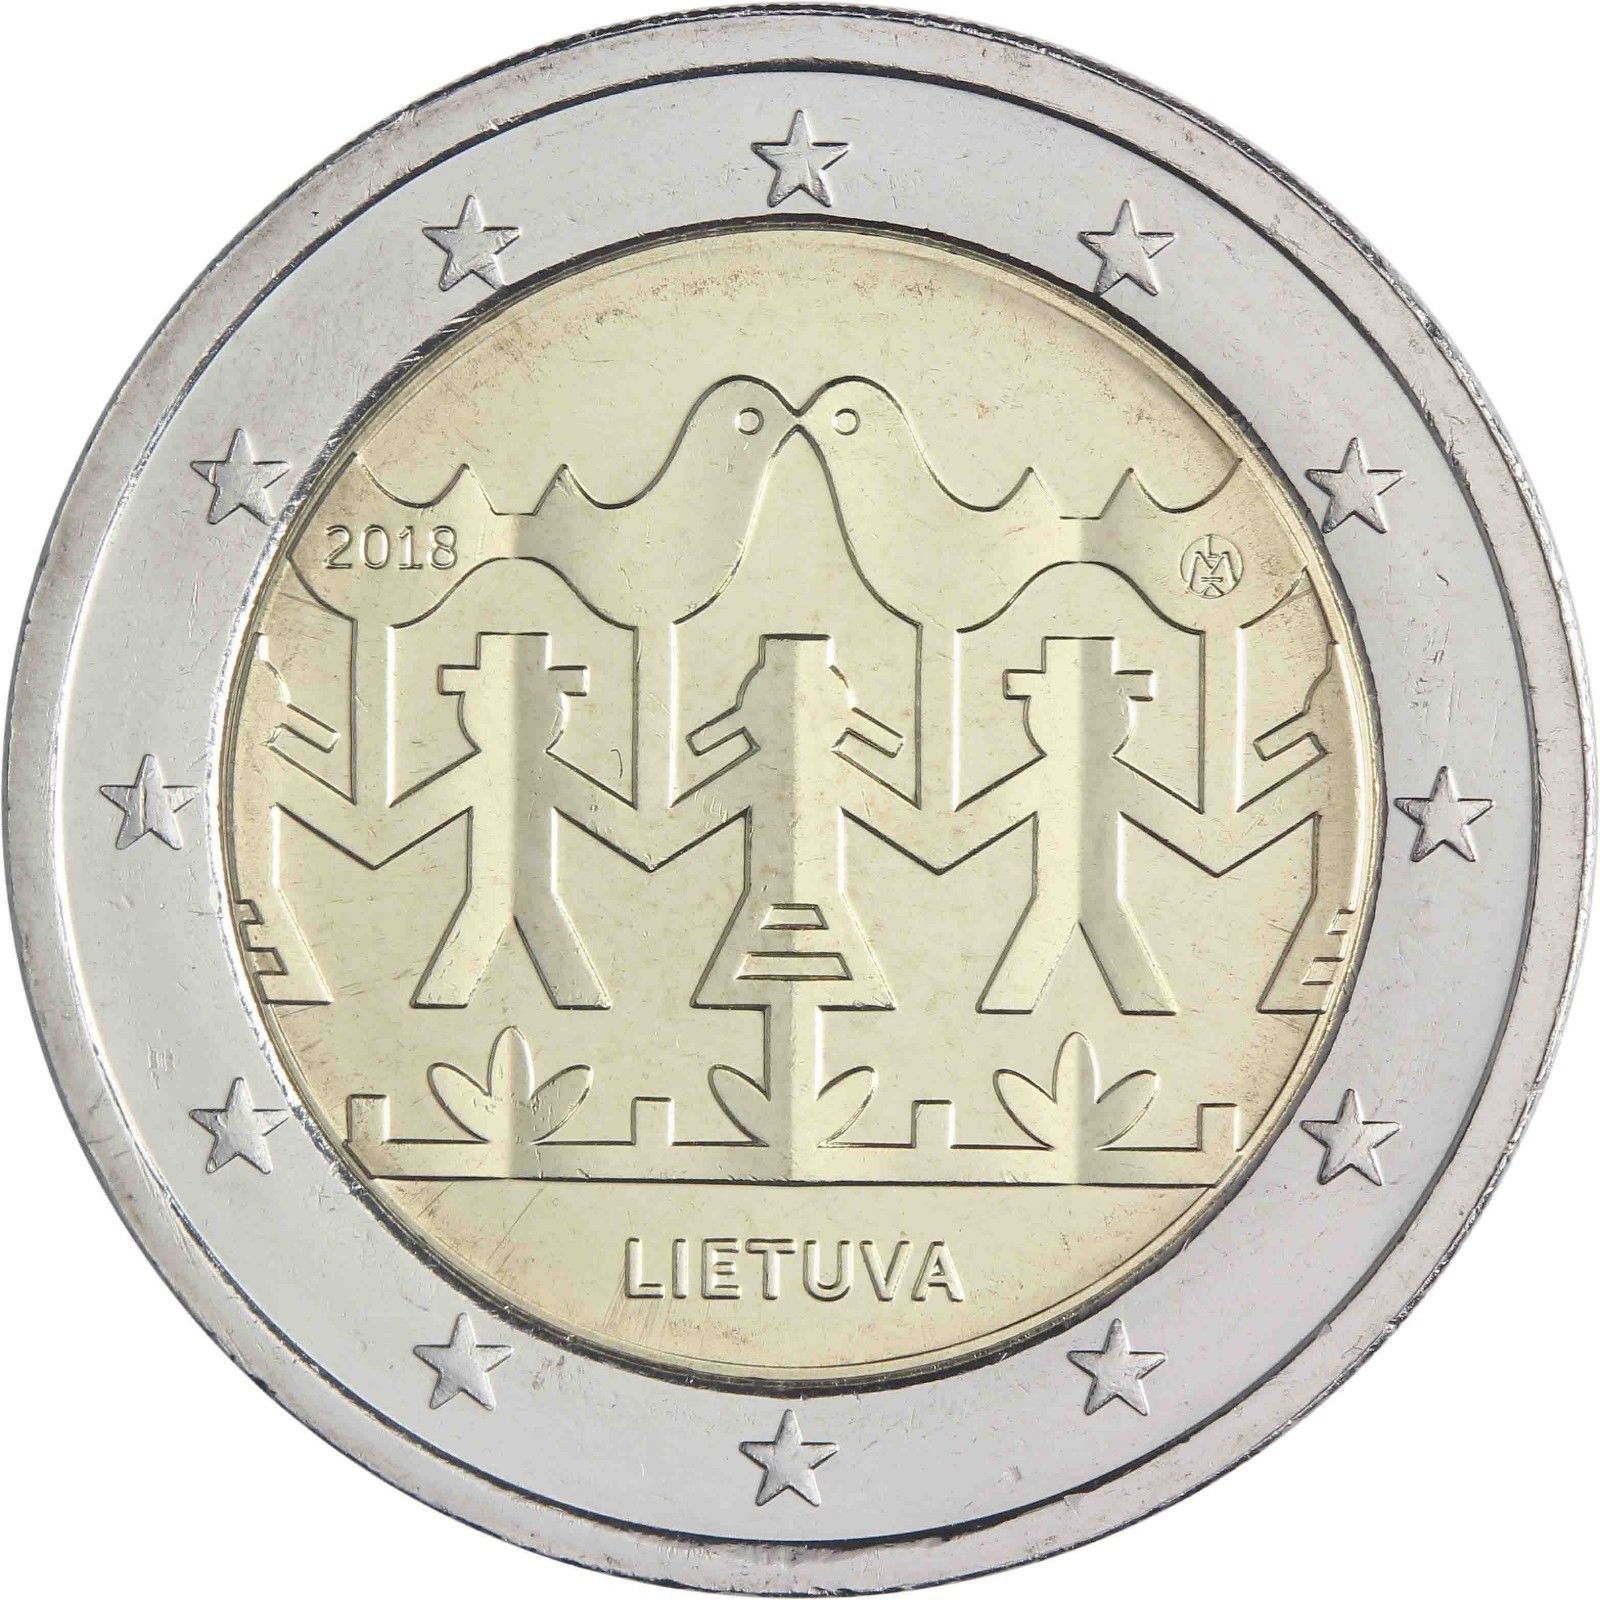 2 euro commemorativo lituania 2018 danza.jpg